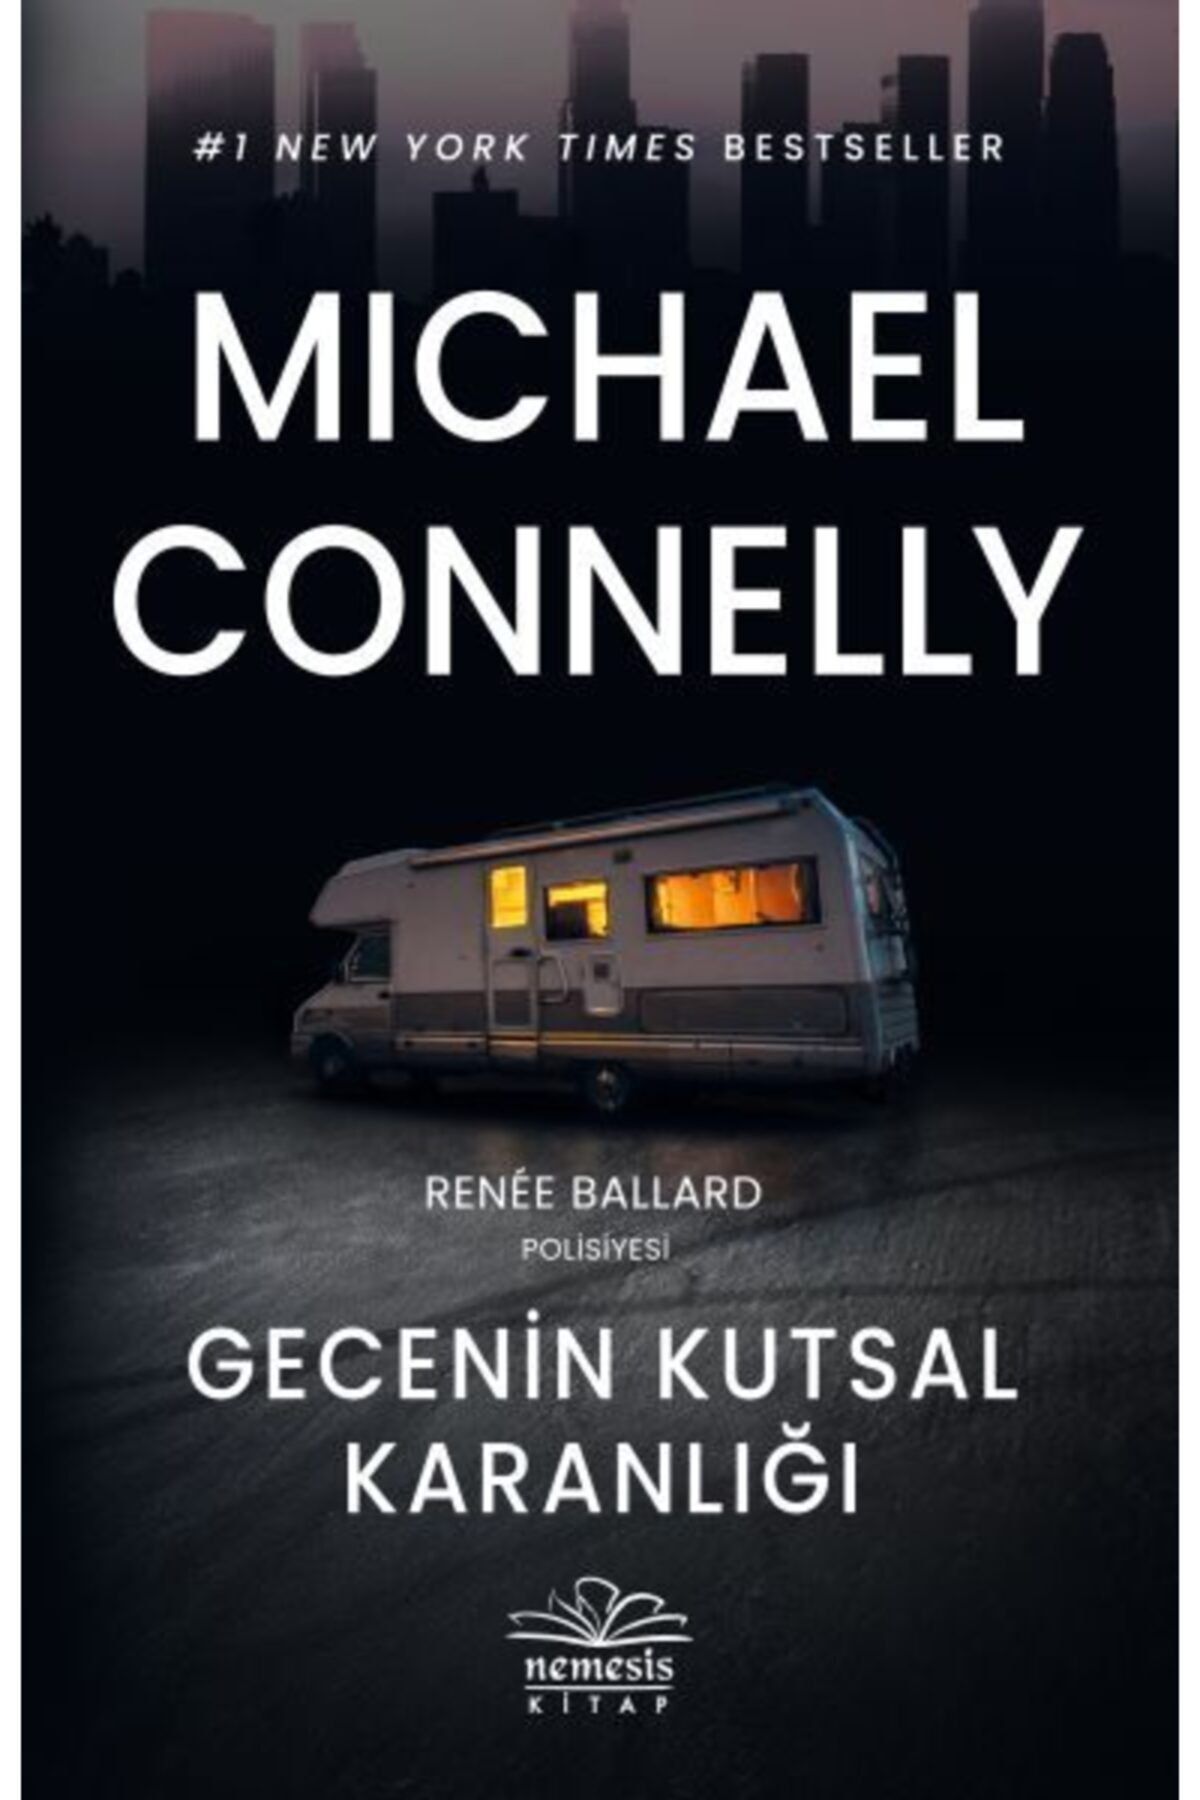 Nemesis Kitap Mıchael Connelly Gecenin Kutsal Karanlığı - Renee Ballard Polisiyesi